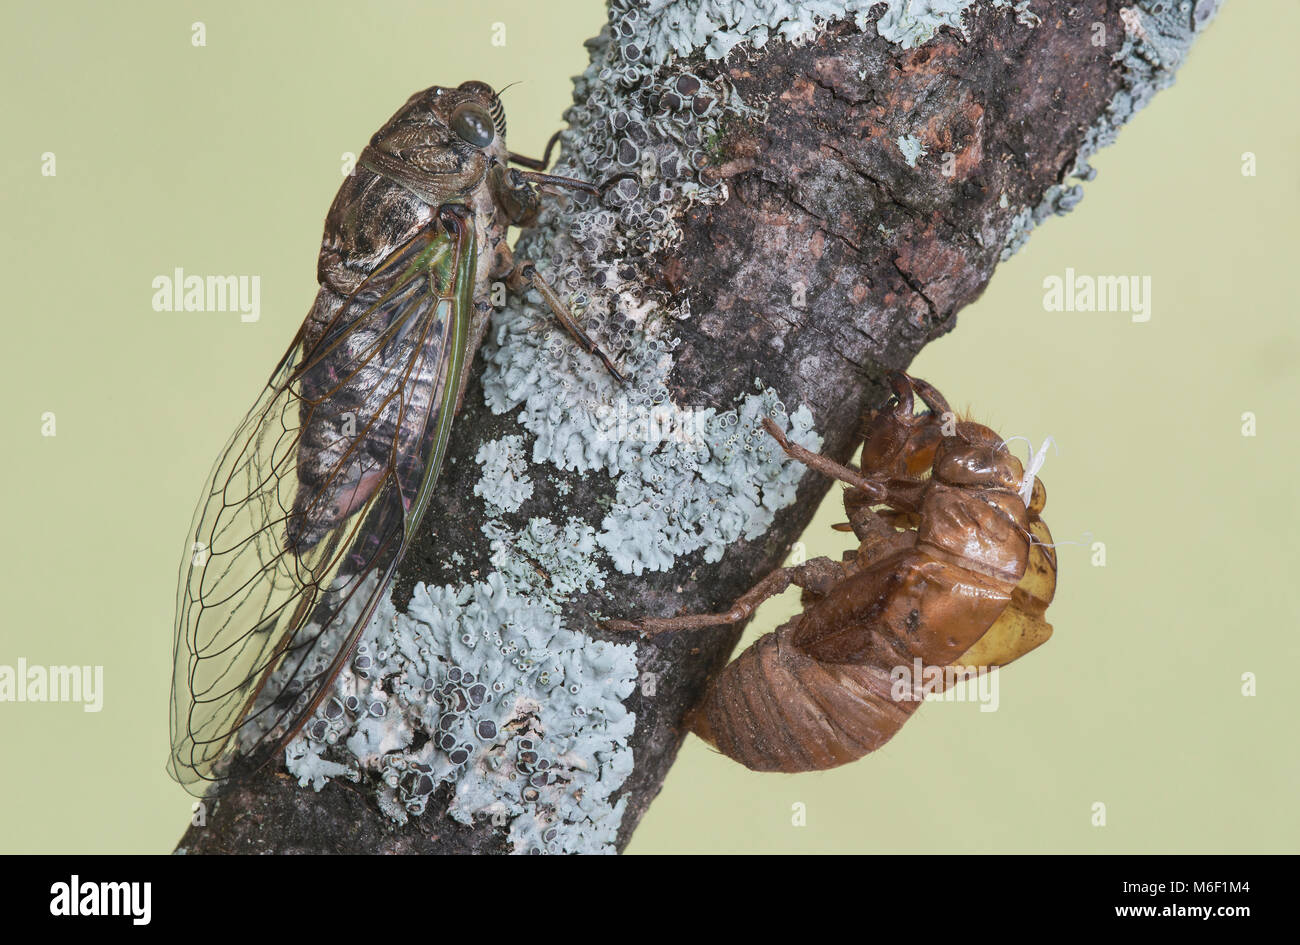 Cicala, emergenti dalla pelle nymphal, E STATI UNITI D'AMERICA, da saltare Moody/Dembinsky Foto Assoc Foto Stock